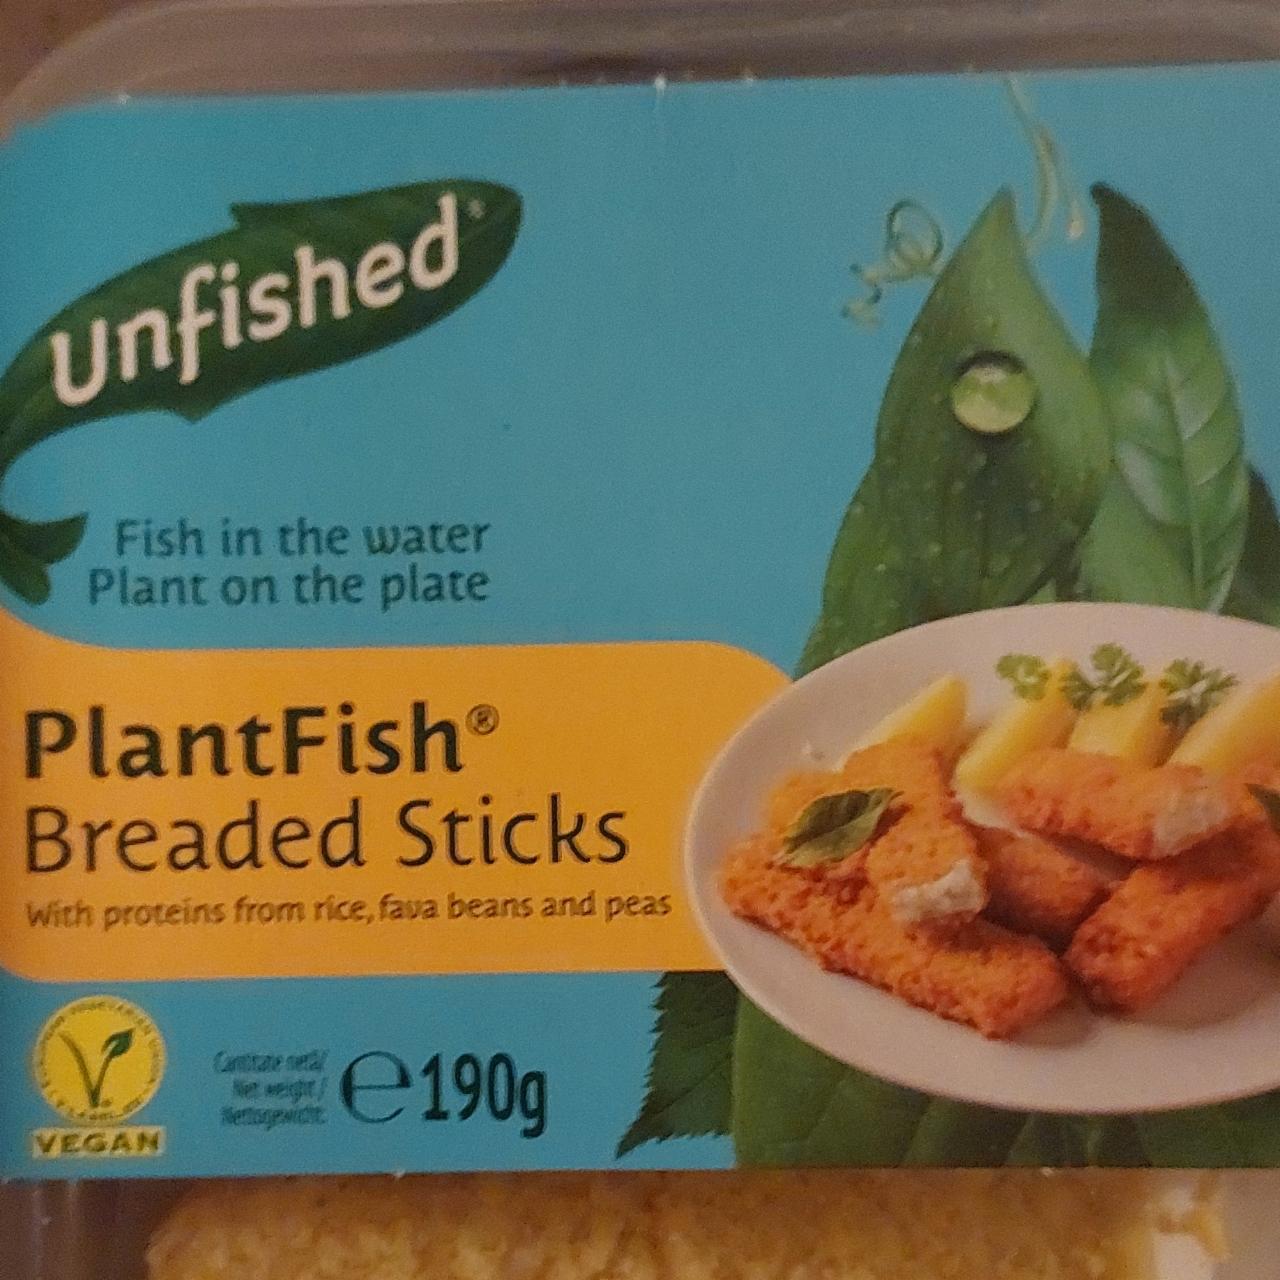 Zdjęcia - PlantFish Breaded sticks Unfished